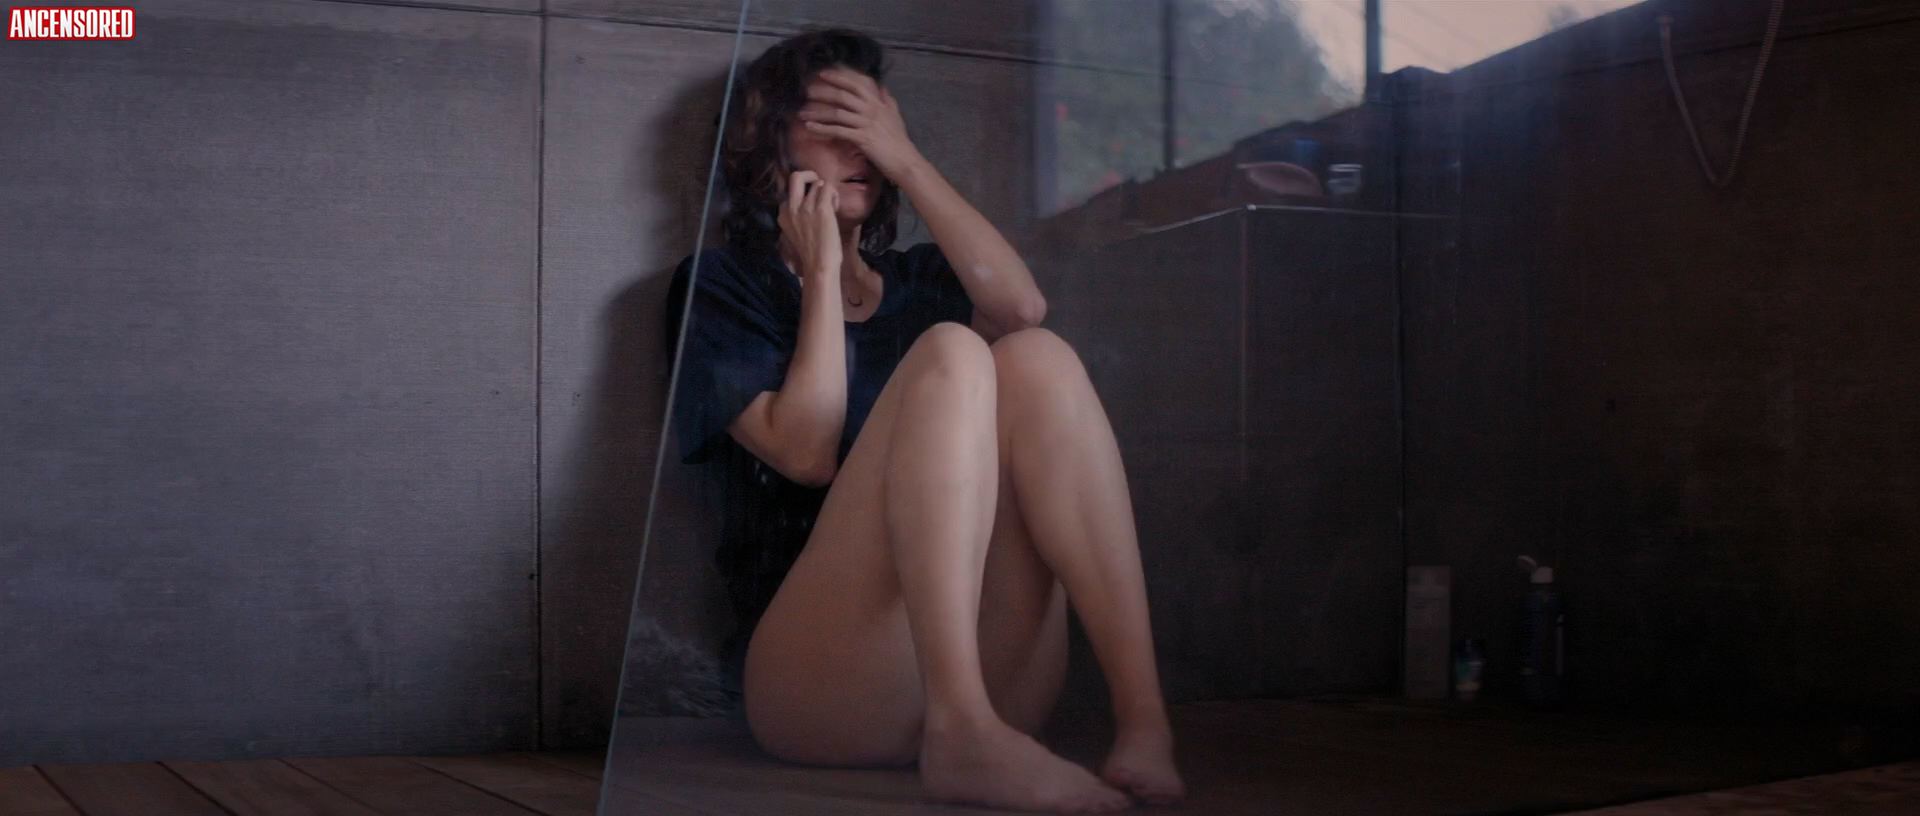 Мэри Элизабет Уинстэд голая (все фото без цензуры): интимные фотографии  бесплатно